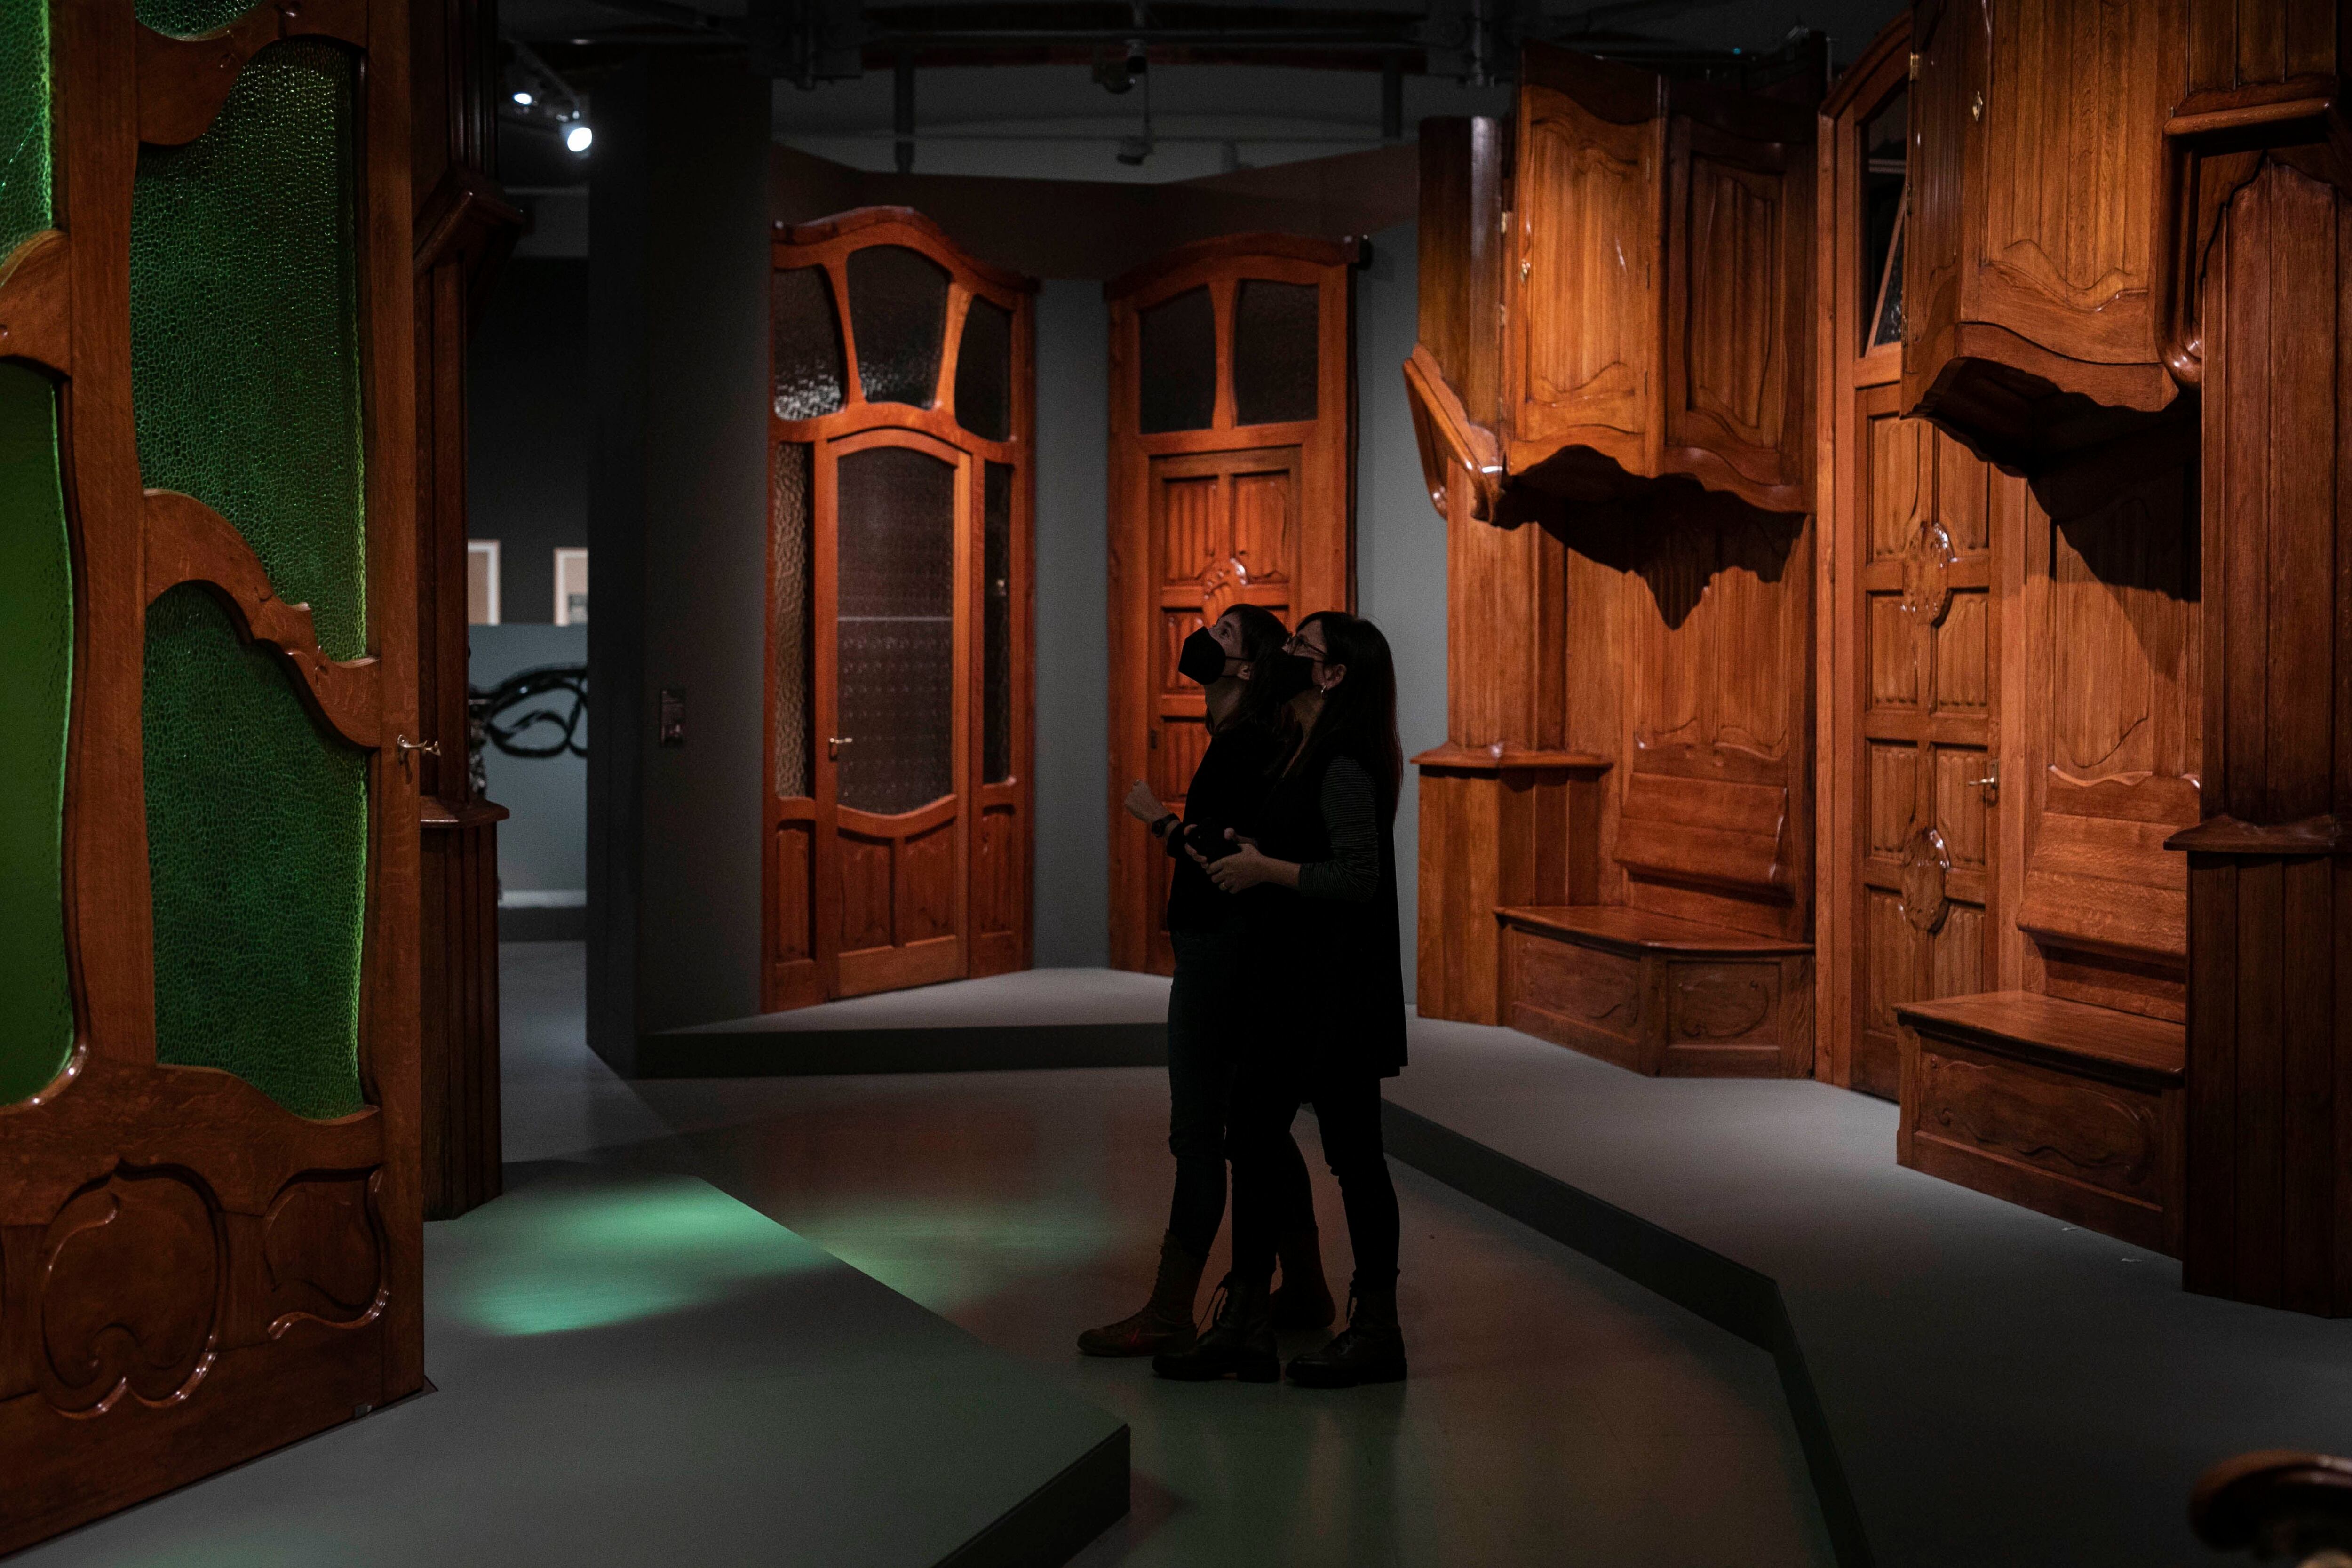 Recibidor y puertas del piso principal de La Pedrera que se pueden ver en la exposición sobre Gaudí en el MNAC. 